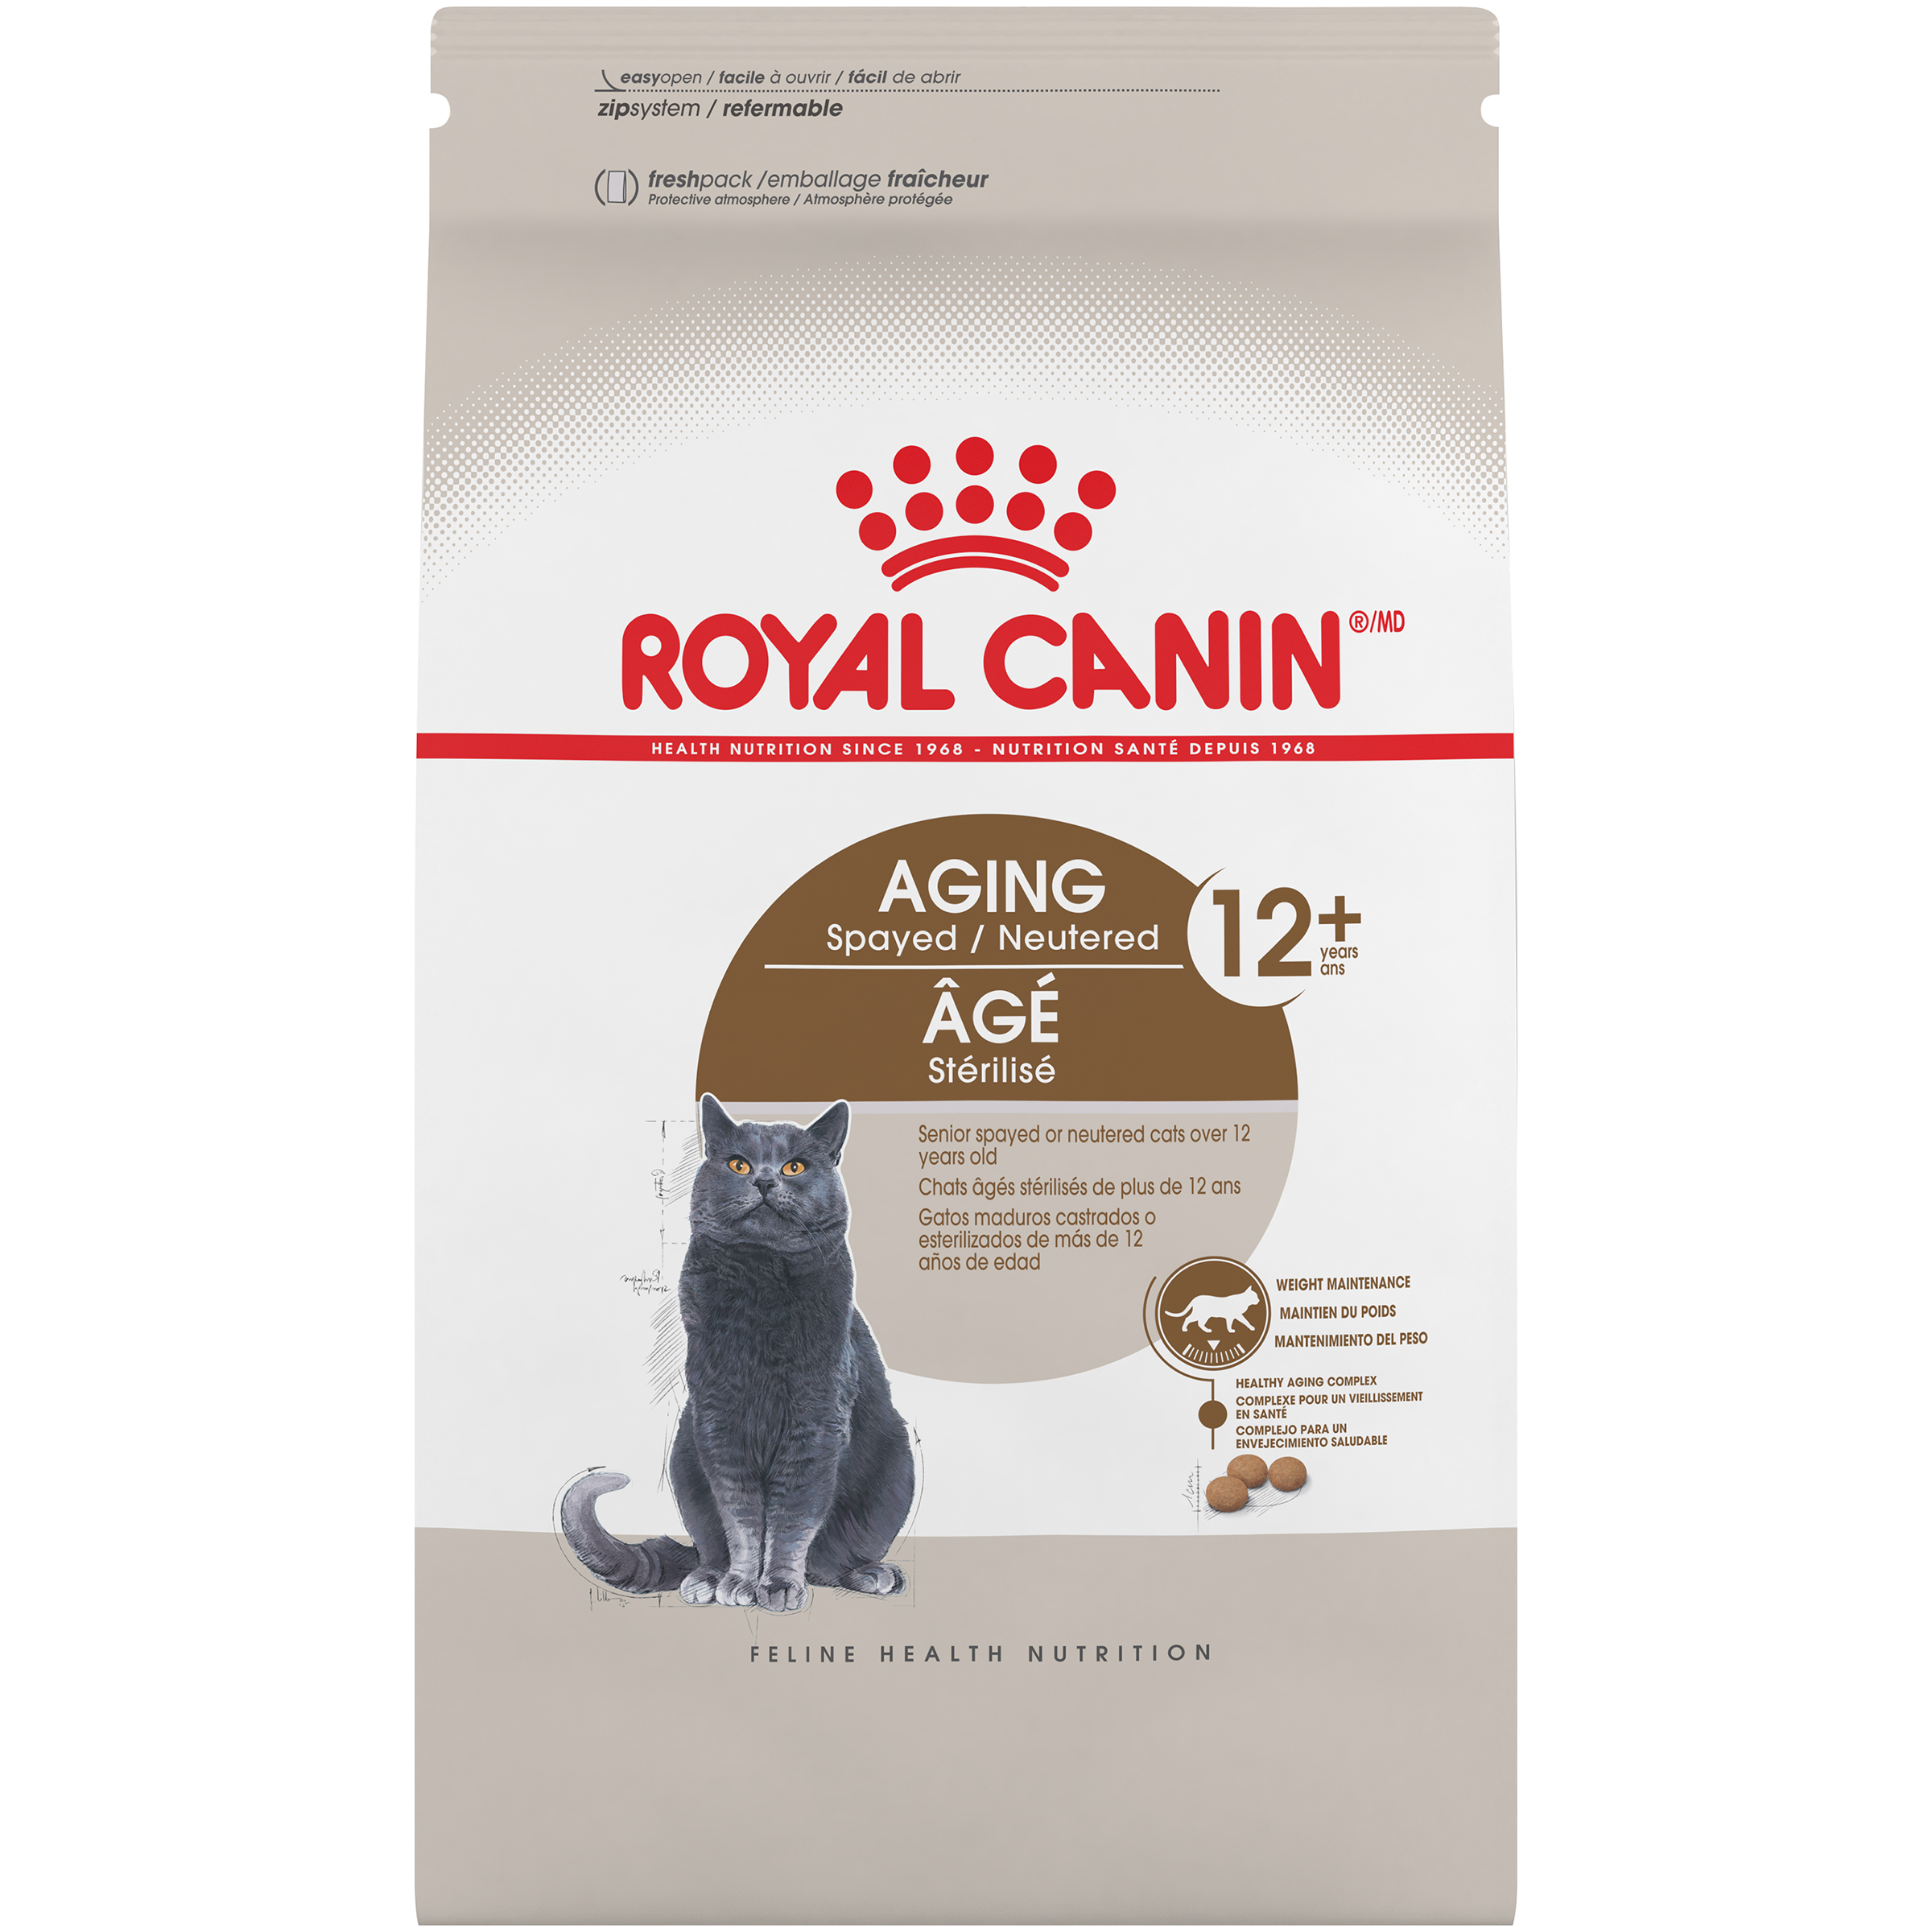 Royal canin 12 для кошек. Корм для кошек Роял Канин +12. Royal Canin Sterilized сухой корм. Роял Канин Стерилайзд 12+ 4кг. Роял Канин для стареющих кошек 7 +.